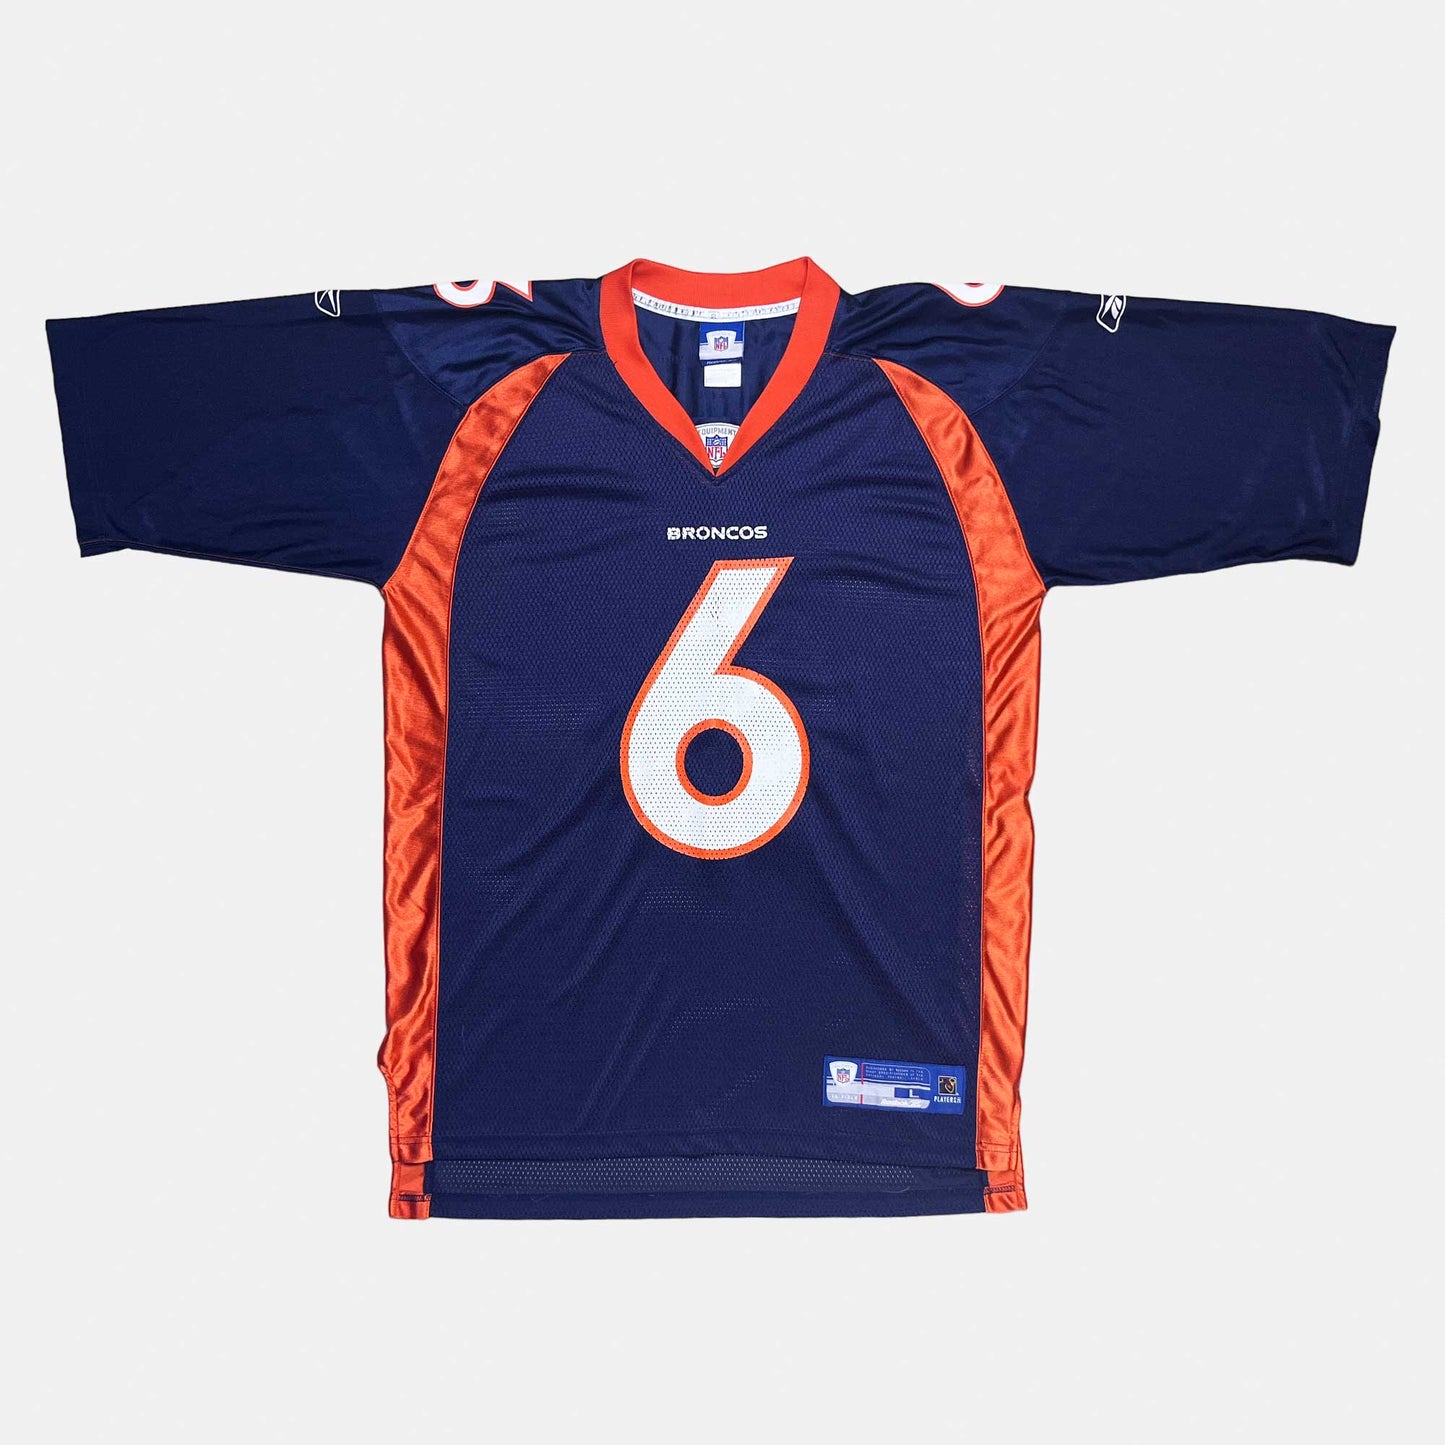 Denver Broncos - Jay Cutler - L - Reebok - NFL Trikot